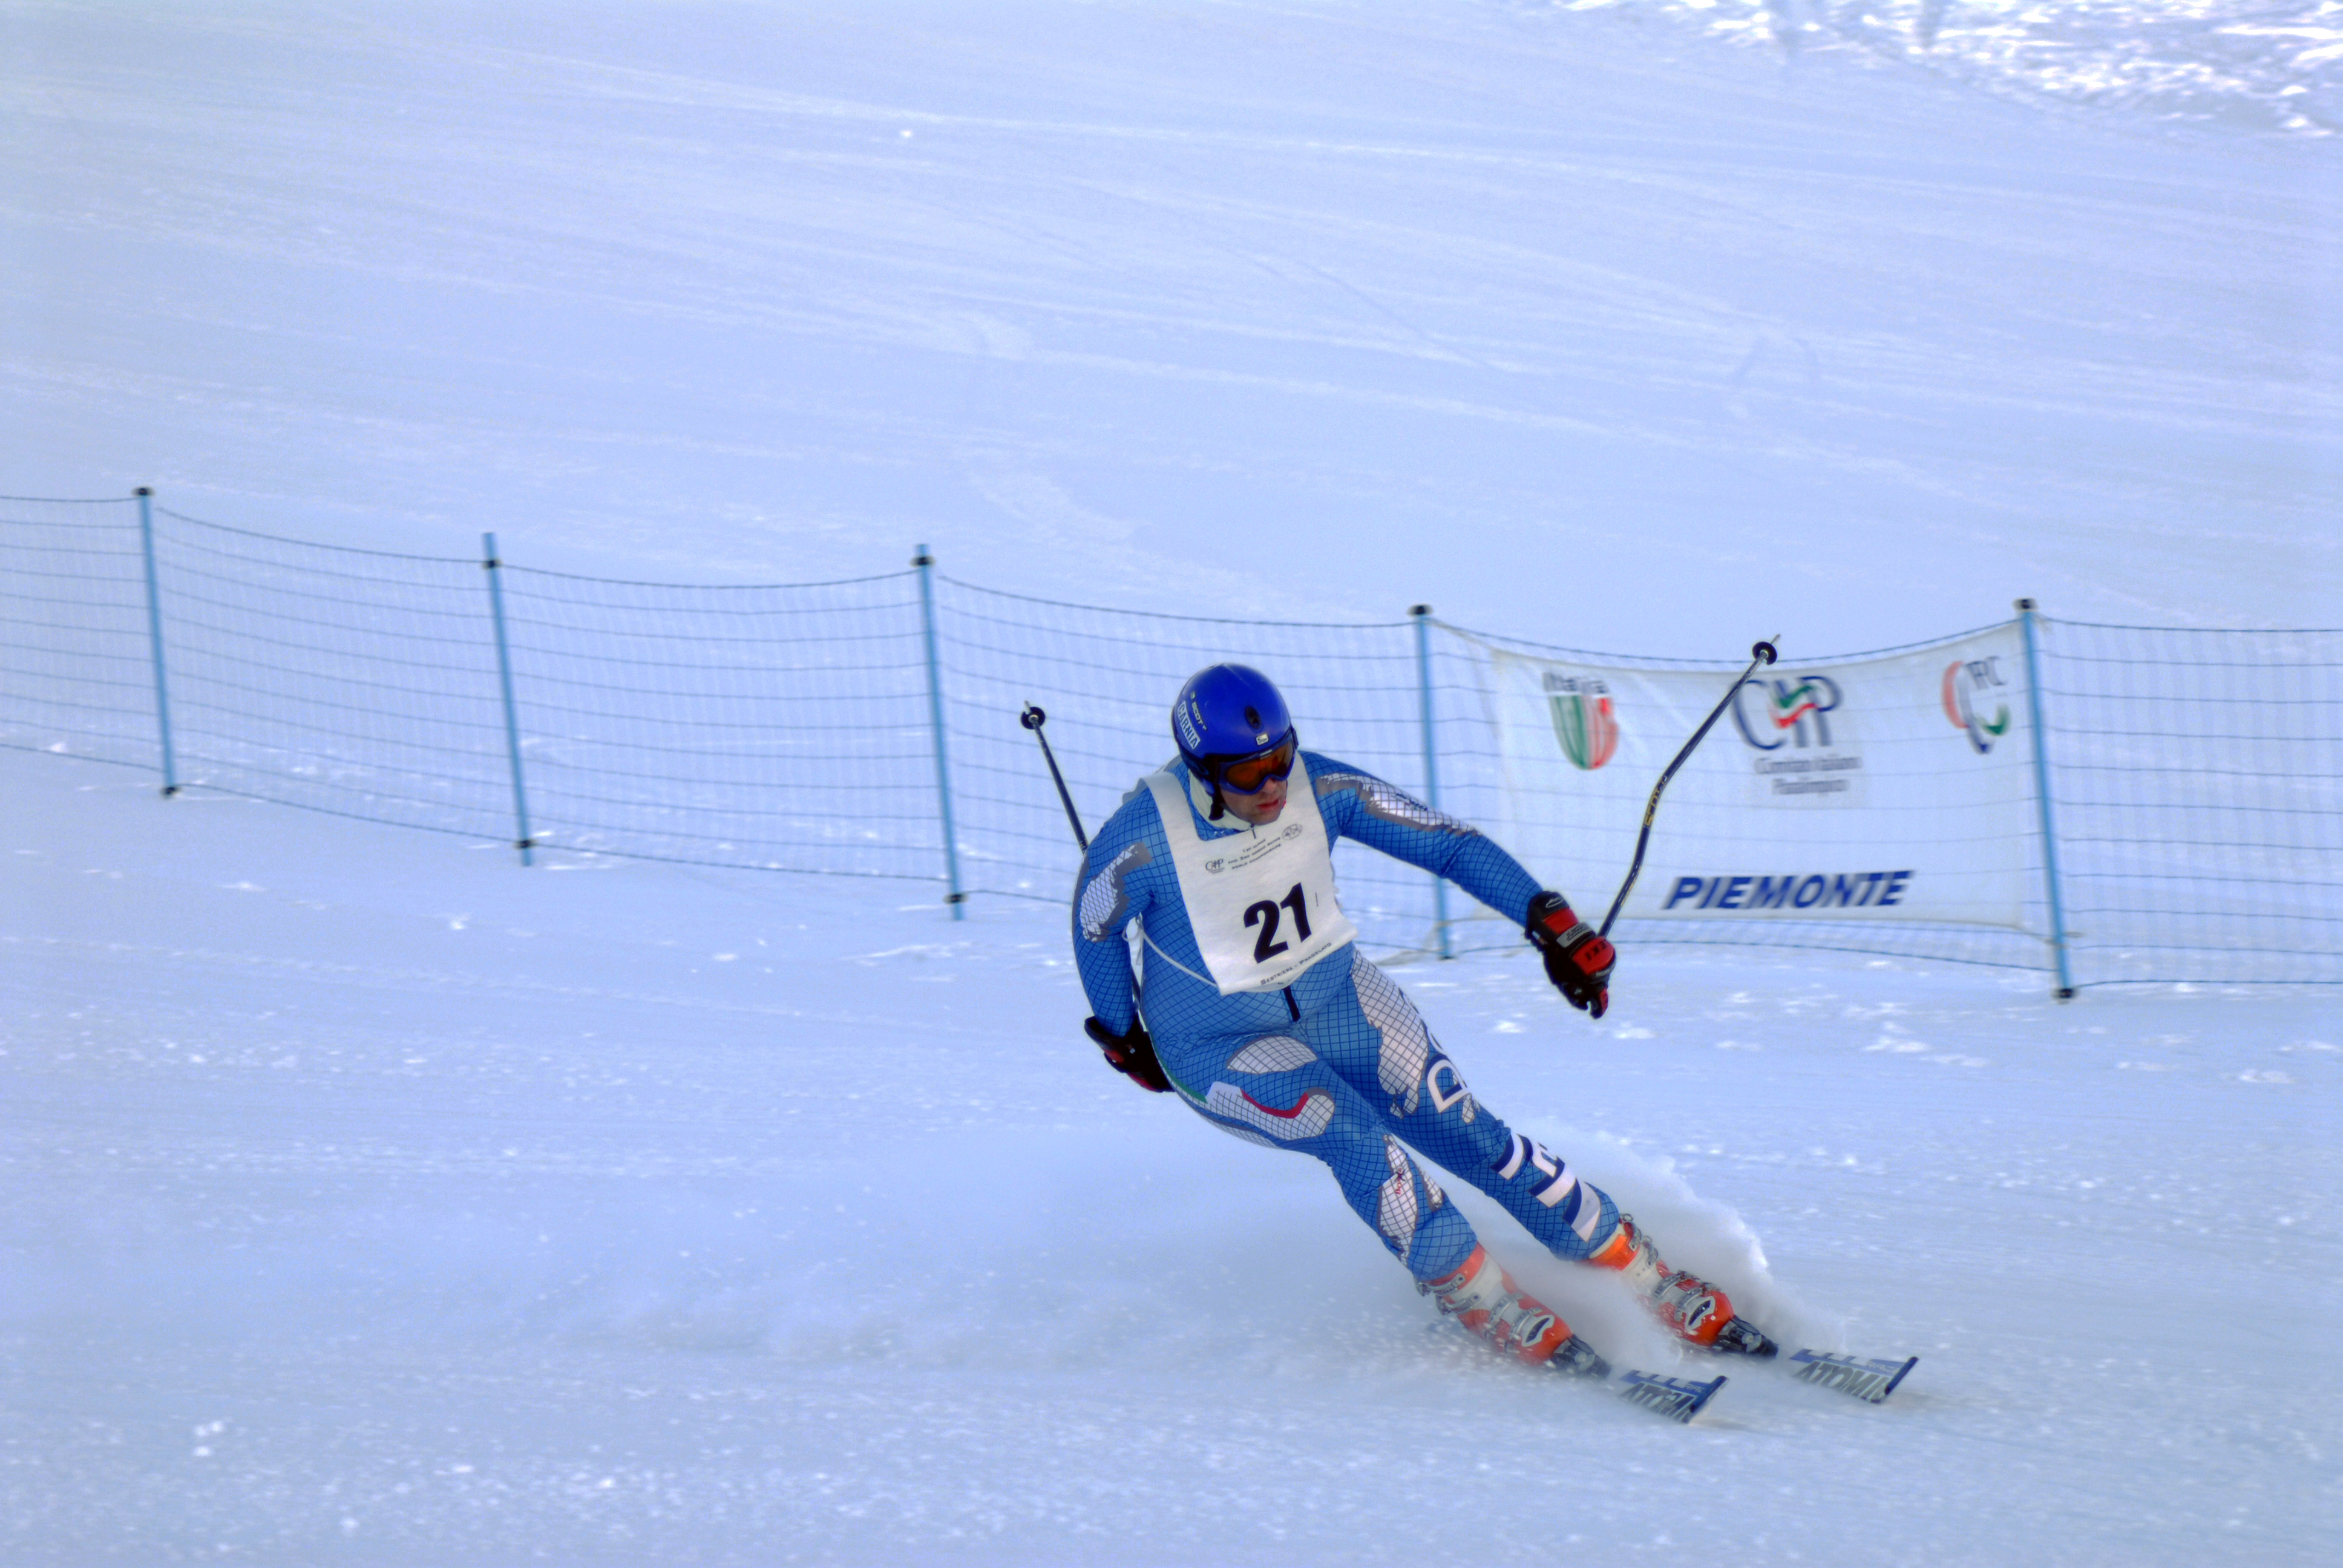 Campionato Italiano Sport Invernali ad Asiago dal 13 al 15 Dicembre